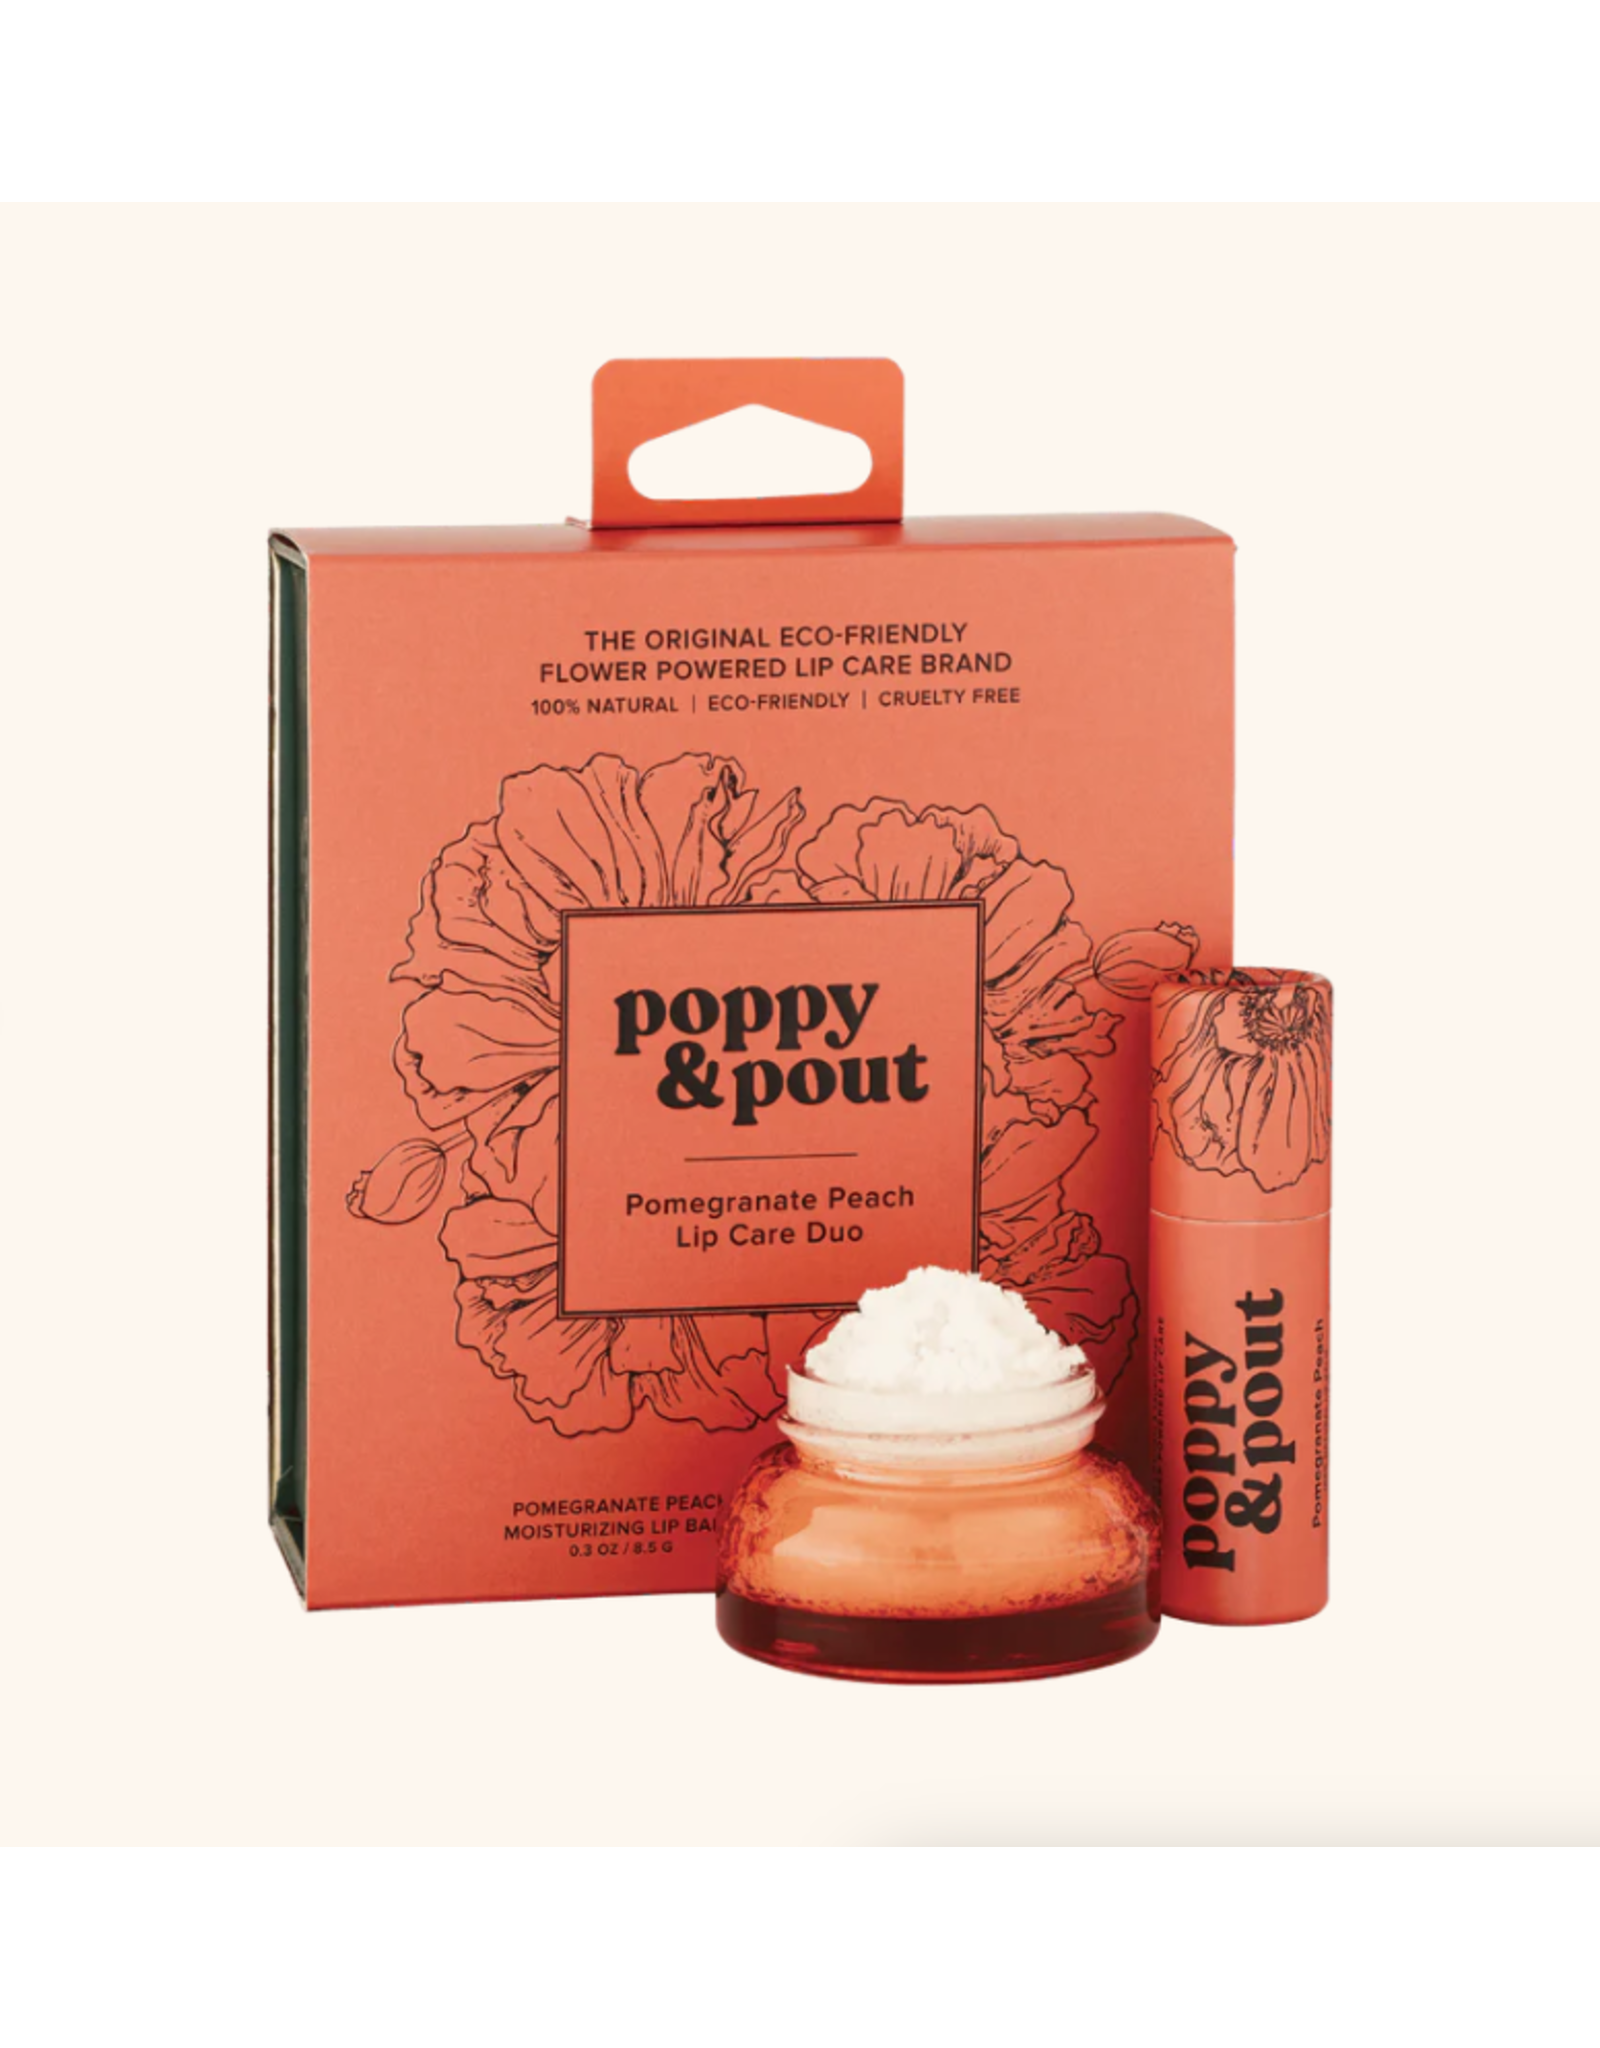 Poppy & Pout Pomegranate Peach Lip Care Duo